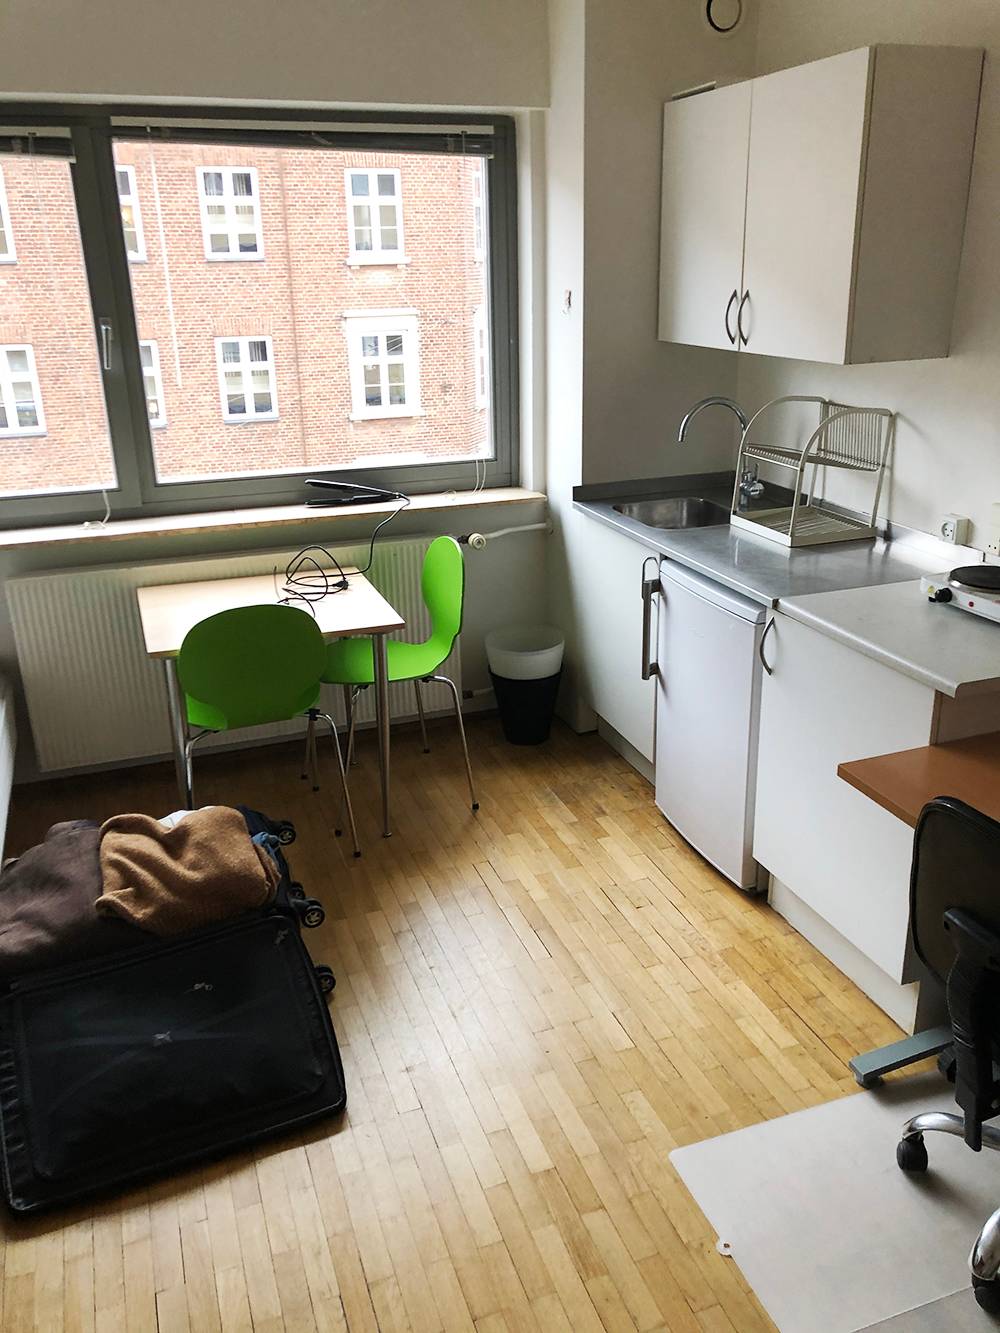 Цены на жилье в Дании очень высокие. Я снимал старую комнату-студию площадью 20&nbsp;м² за 600 € в месяц